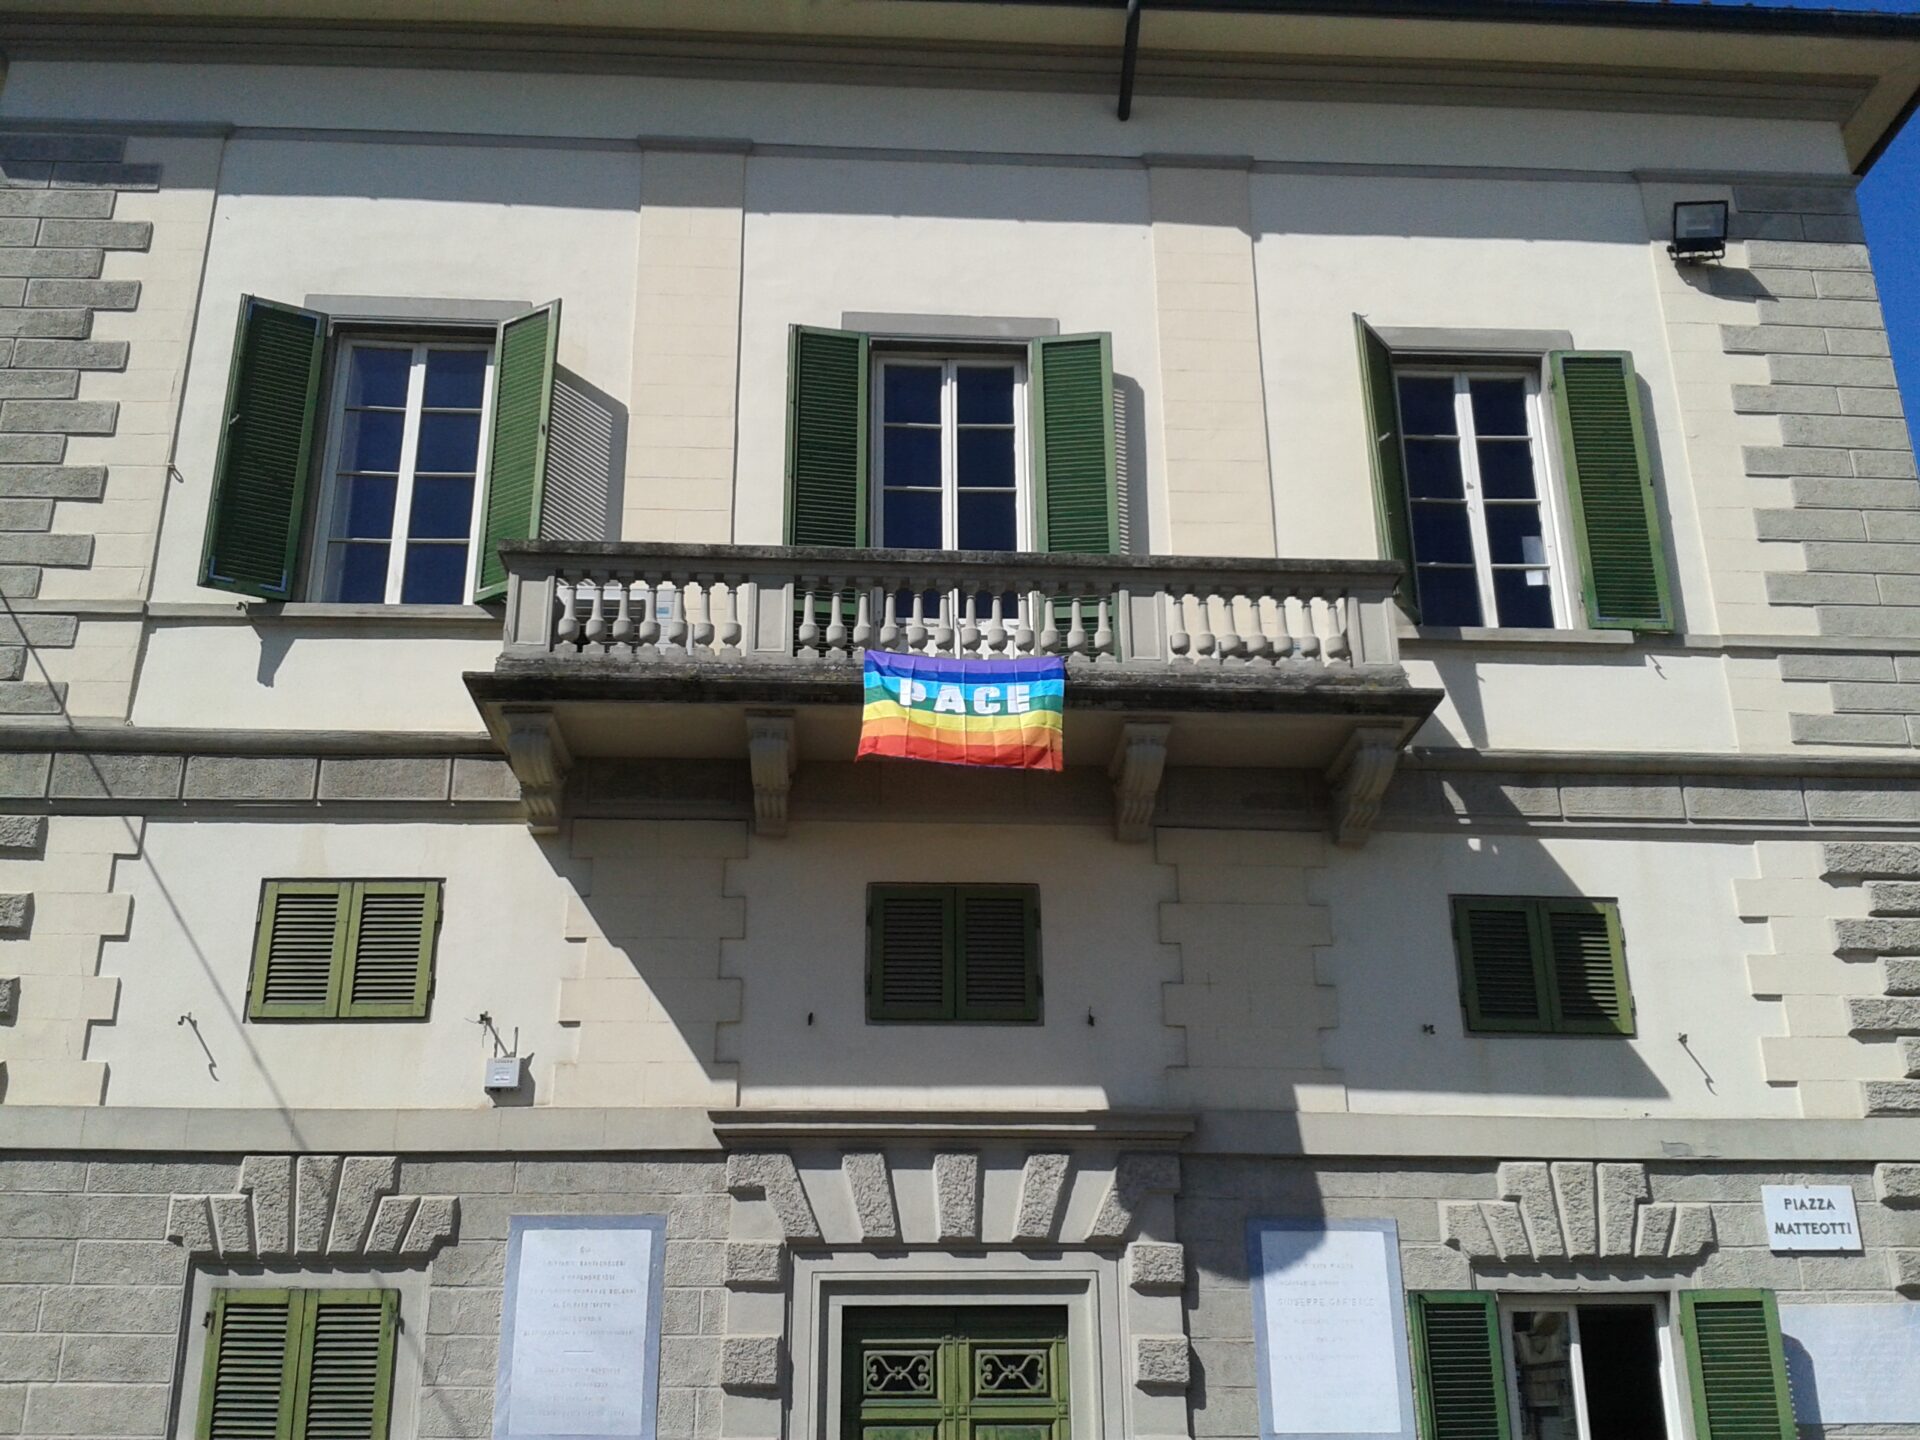 Sventola la bandiera della Pace sulla biblioteca, Santa Croce sull’Arno contro le guerre